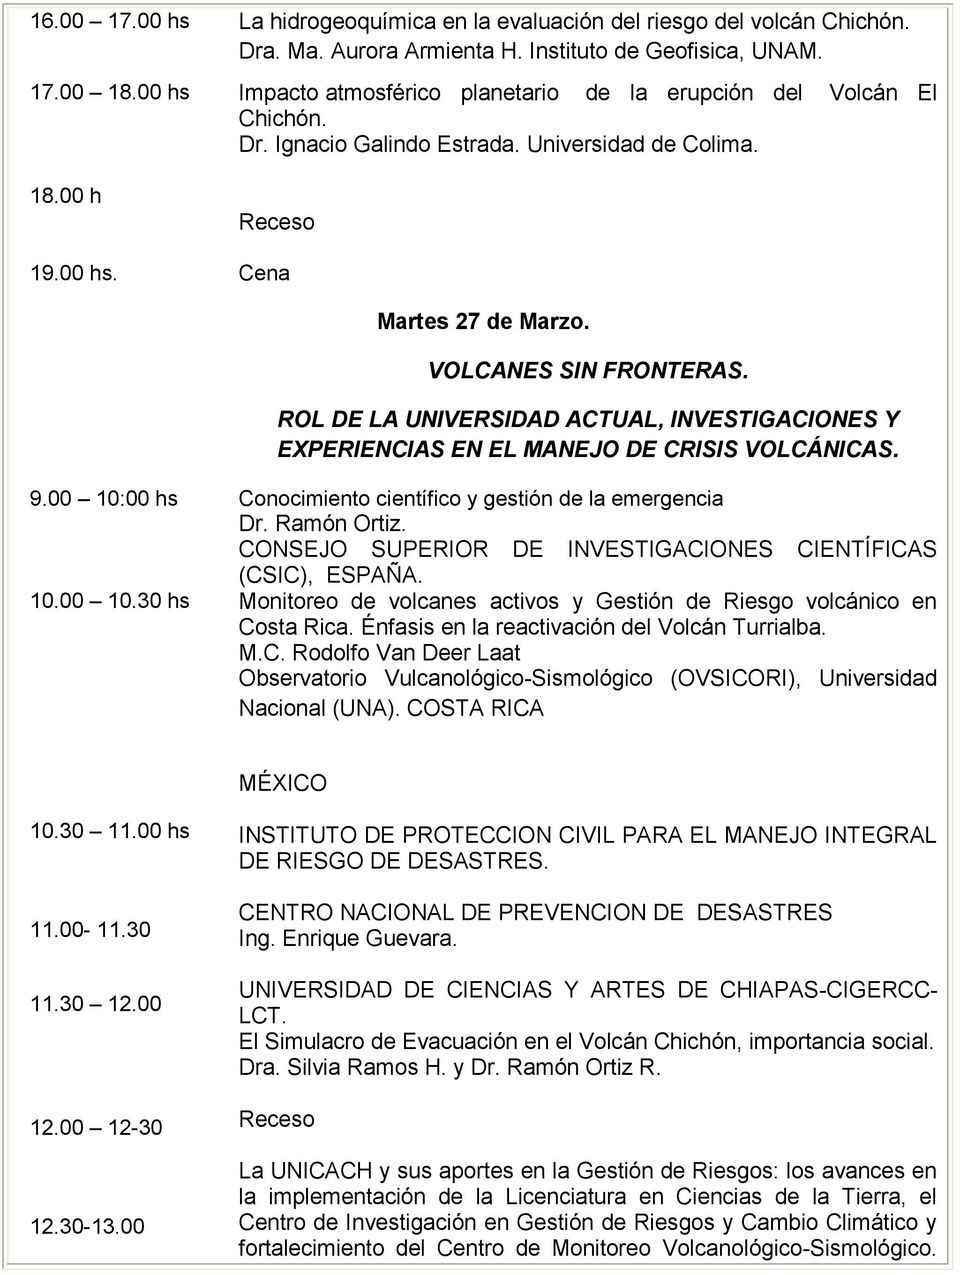 ROL DE LA UNIVERSIDAD ACTUAL, INVESTIGACIONES Y EXPERIENCIAS EN EL MANEJO DE CRISIS VOLCÁNICAS. 9.00 10:00 hs Conocimiento científico y gestión de la emergencia Dr. Ramón Ortiz.